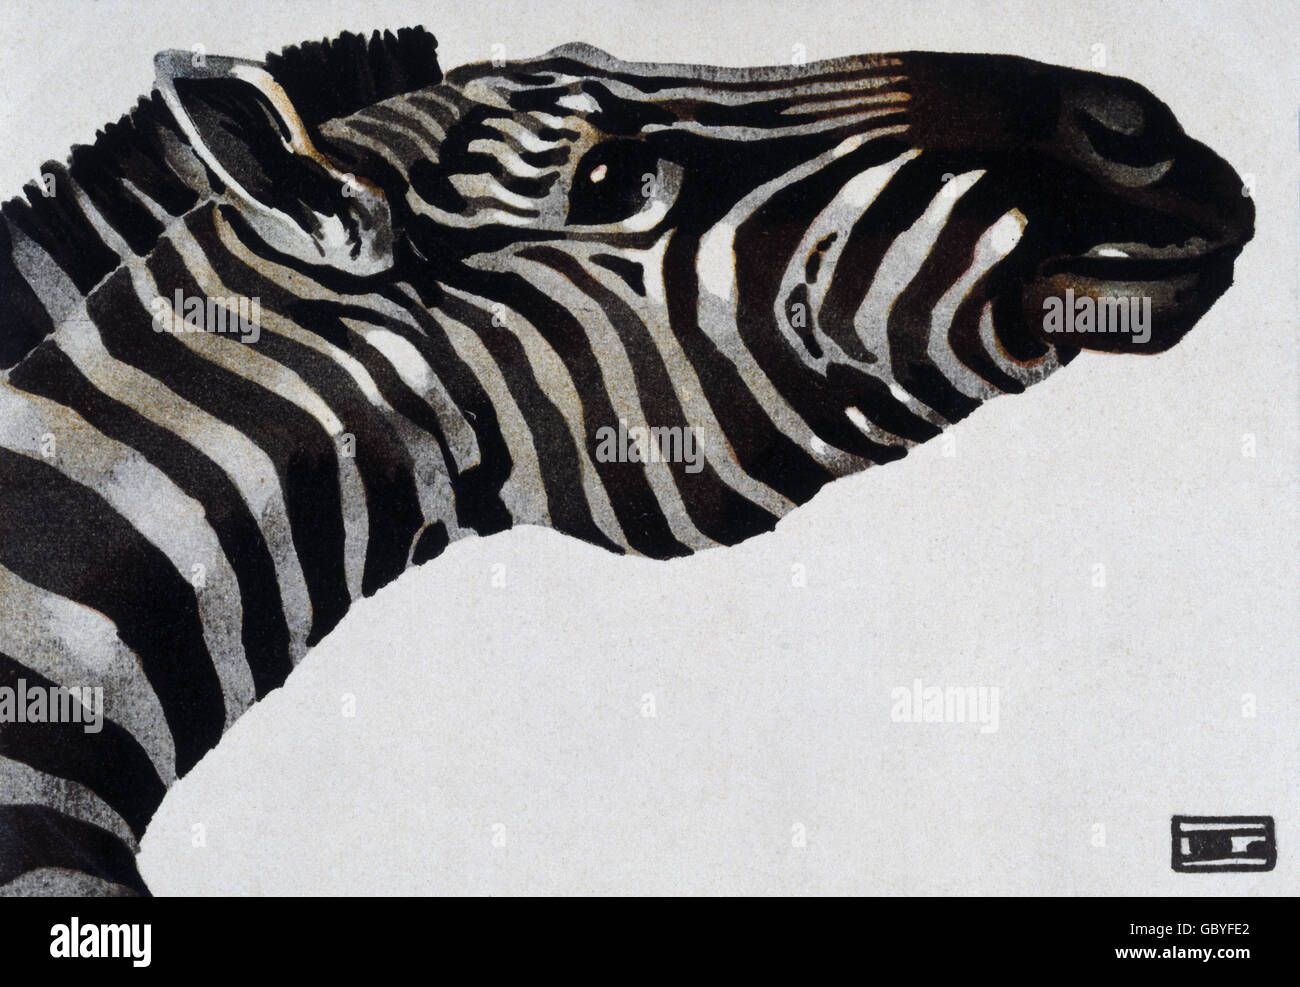 zoologie, Zebra, Illustration auf Werbeplakat für den Tiergarten Hellabrunn, München, gemalt im Stil Hohlweins, um 1910, Zusatz-Rechteklärung-nicht vorhanden Stockfoto